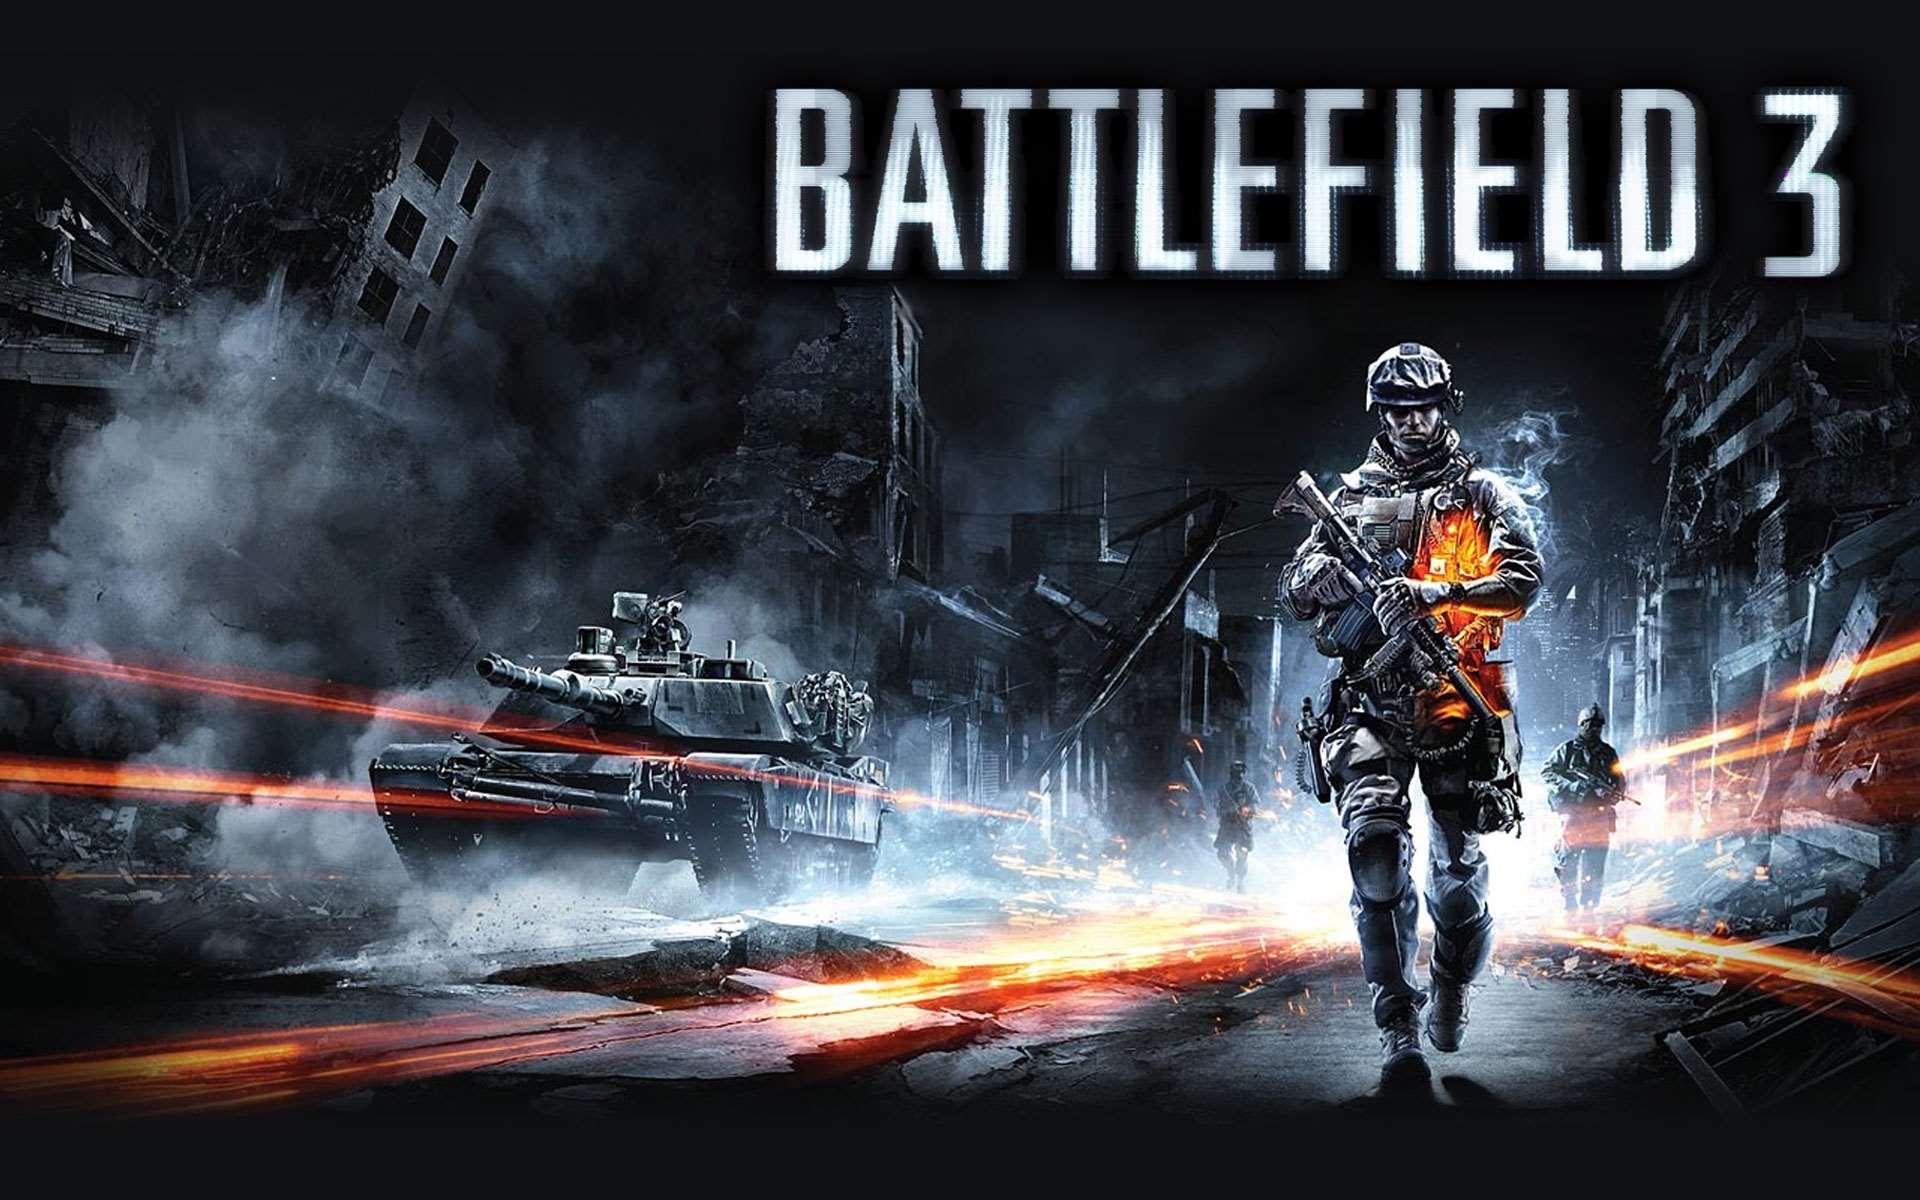 Battlefield 3 GameInformer Wallpaper (1920 x 1200)